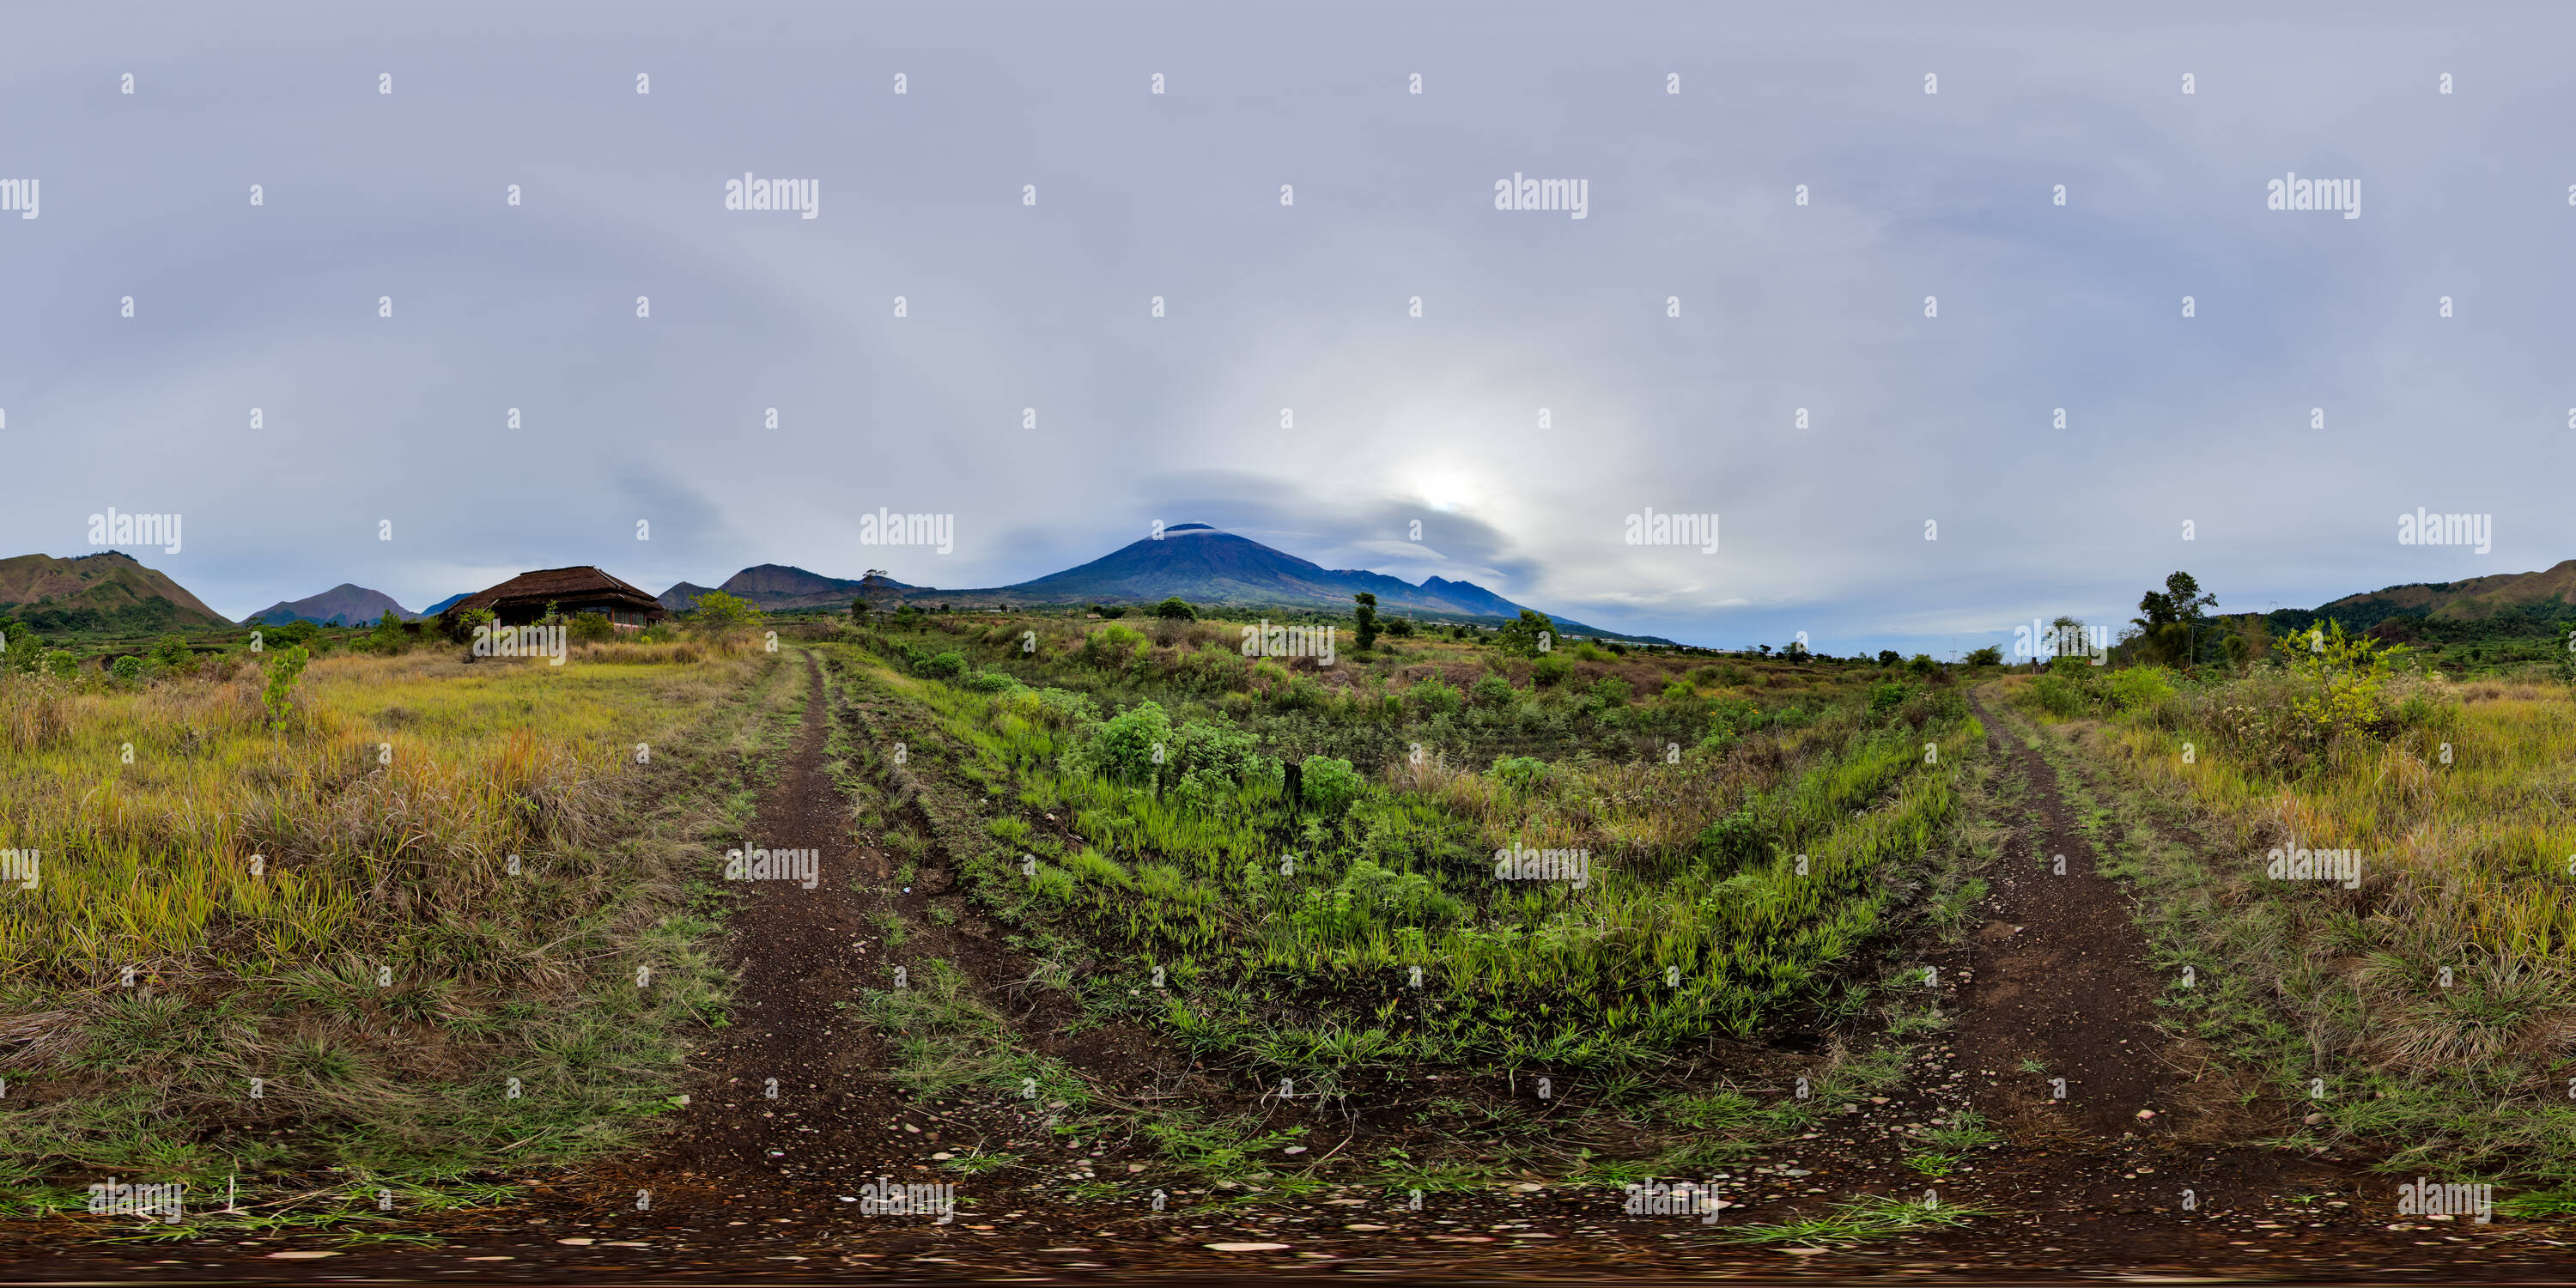 360 Grad Panorama Ansicht von Blick auf den Mount Rinjani